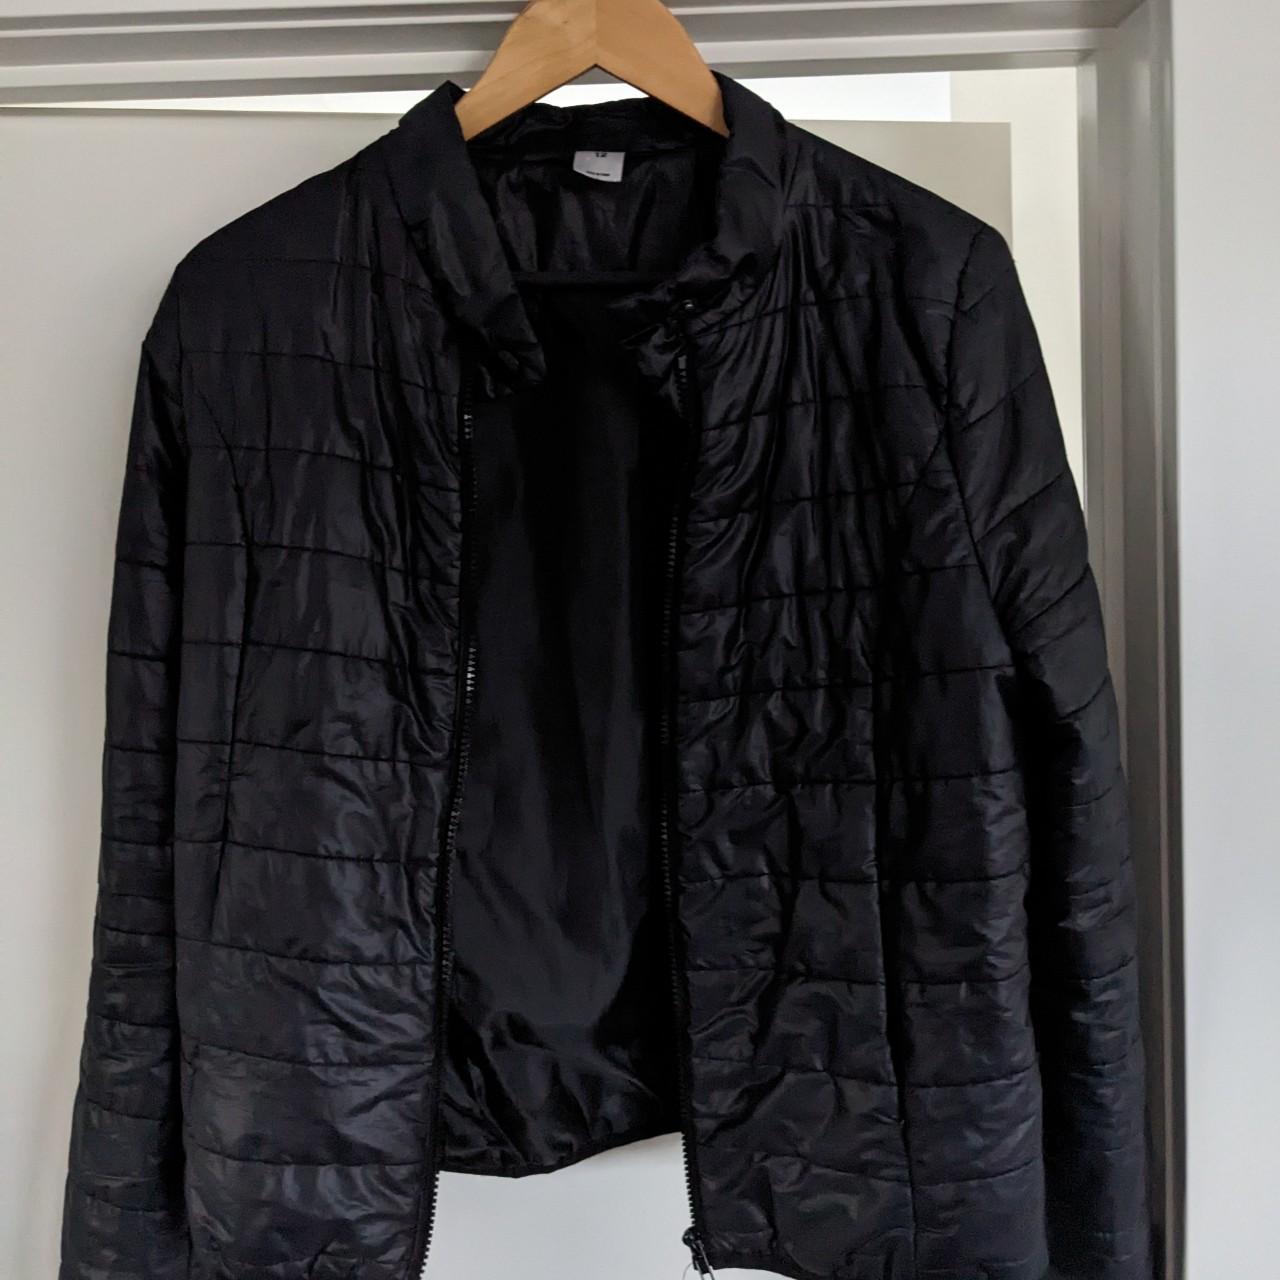 Puffer jacket from Kmart ️ Light weight Super warm... - Depop